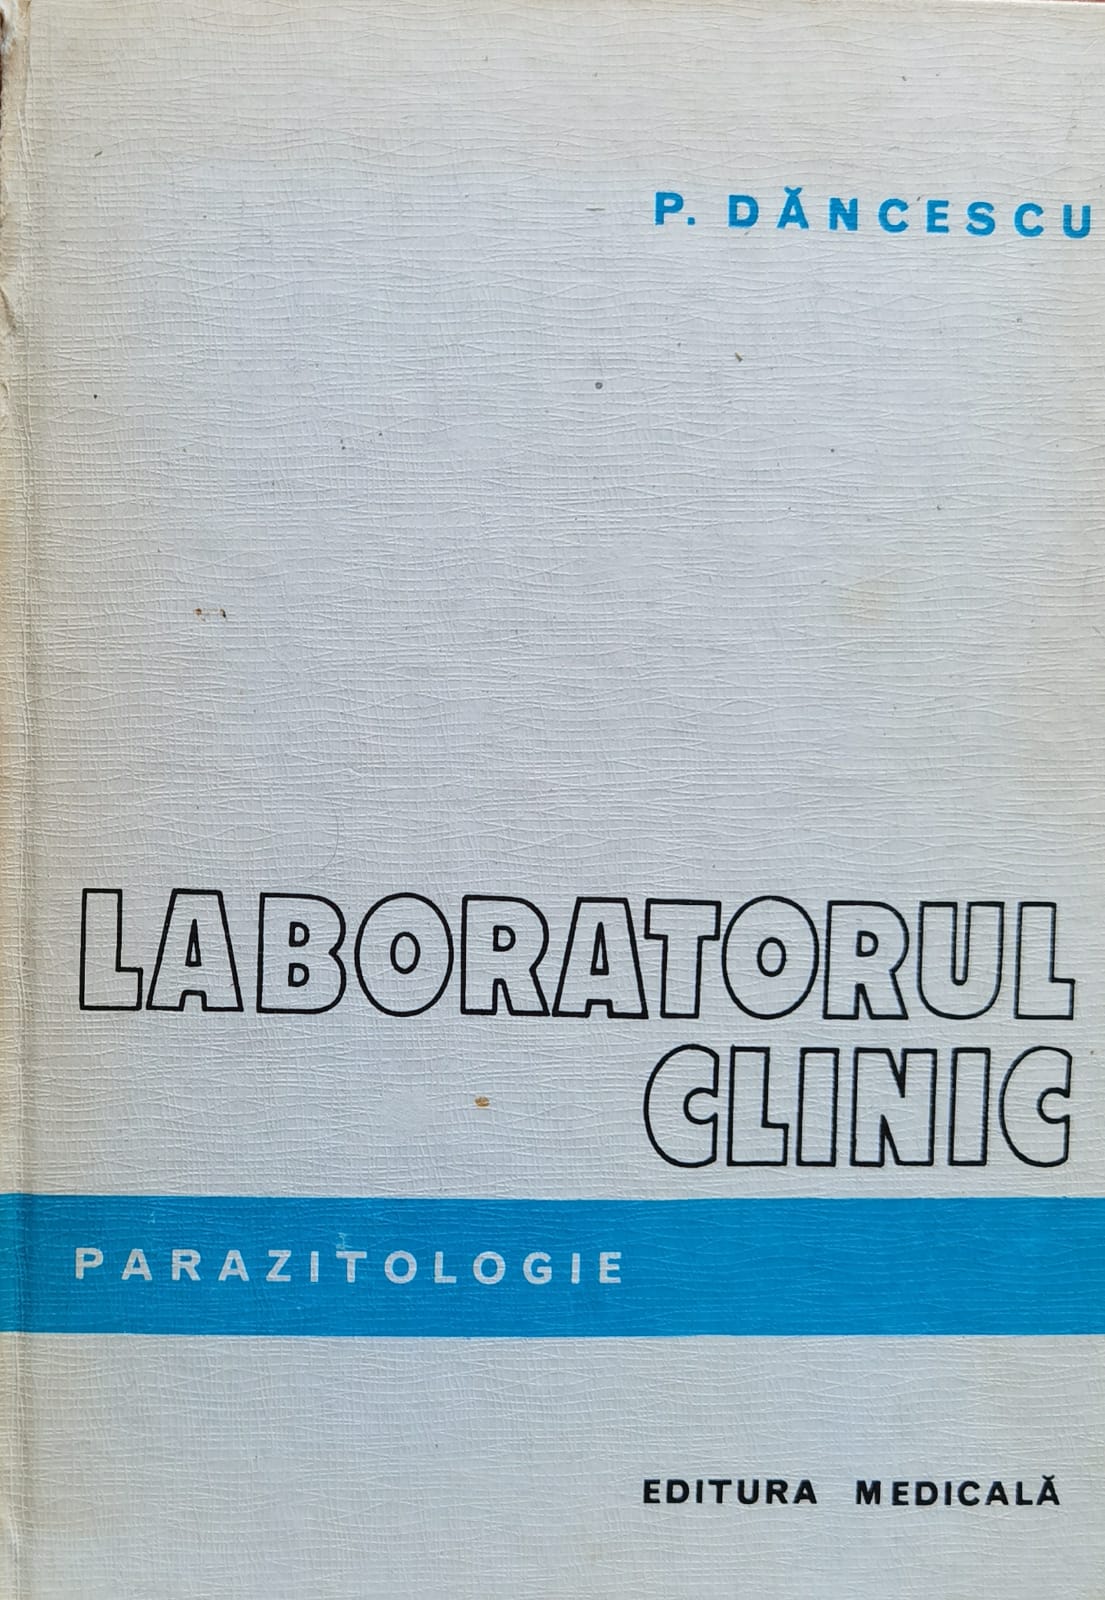 laboratorul clinic parazitologie                                                                     p. dancescu                                                                                         